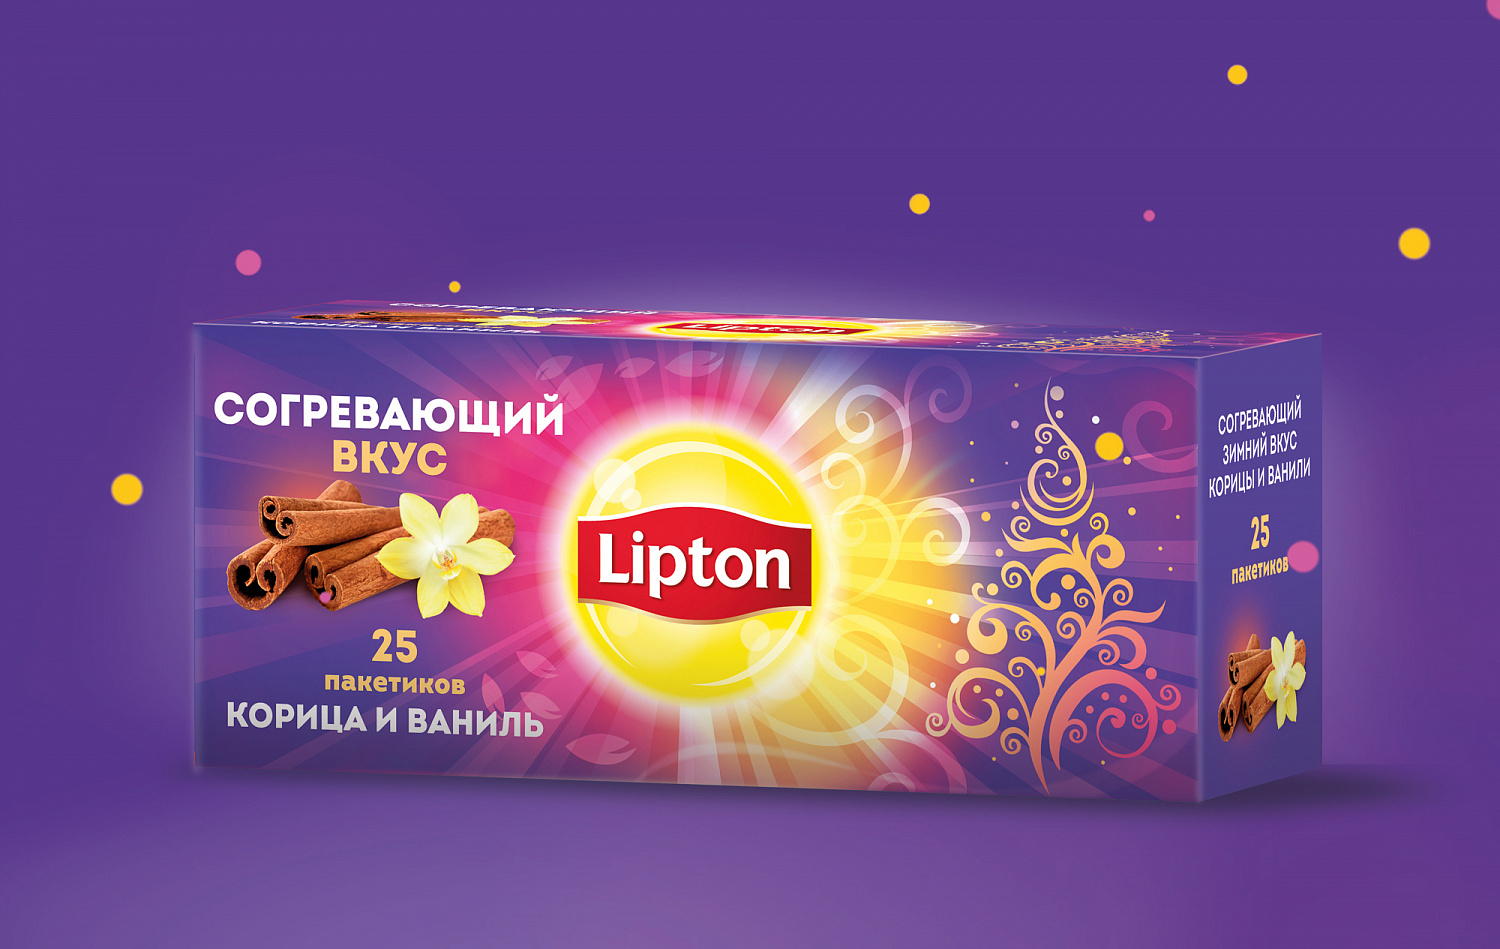 Новогодняя серия Lipton с корицей и ванилью - Портфолио Depot